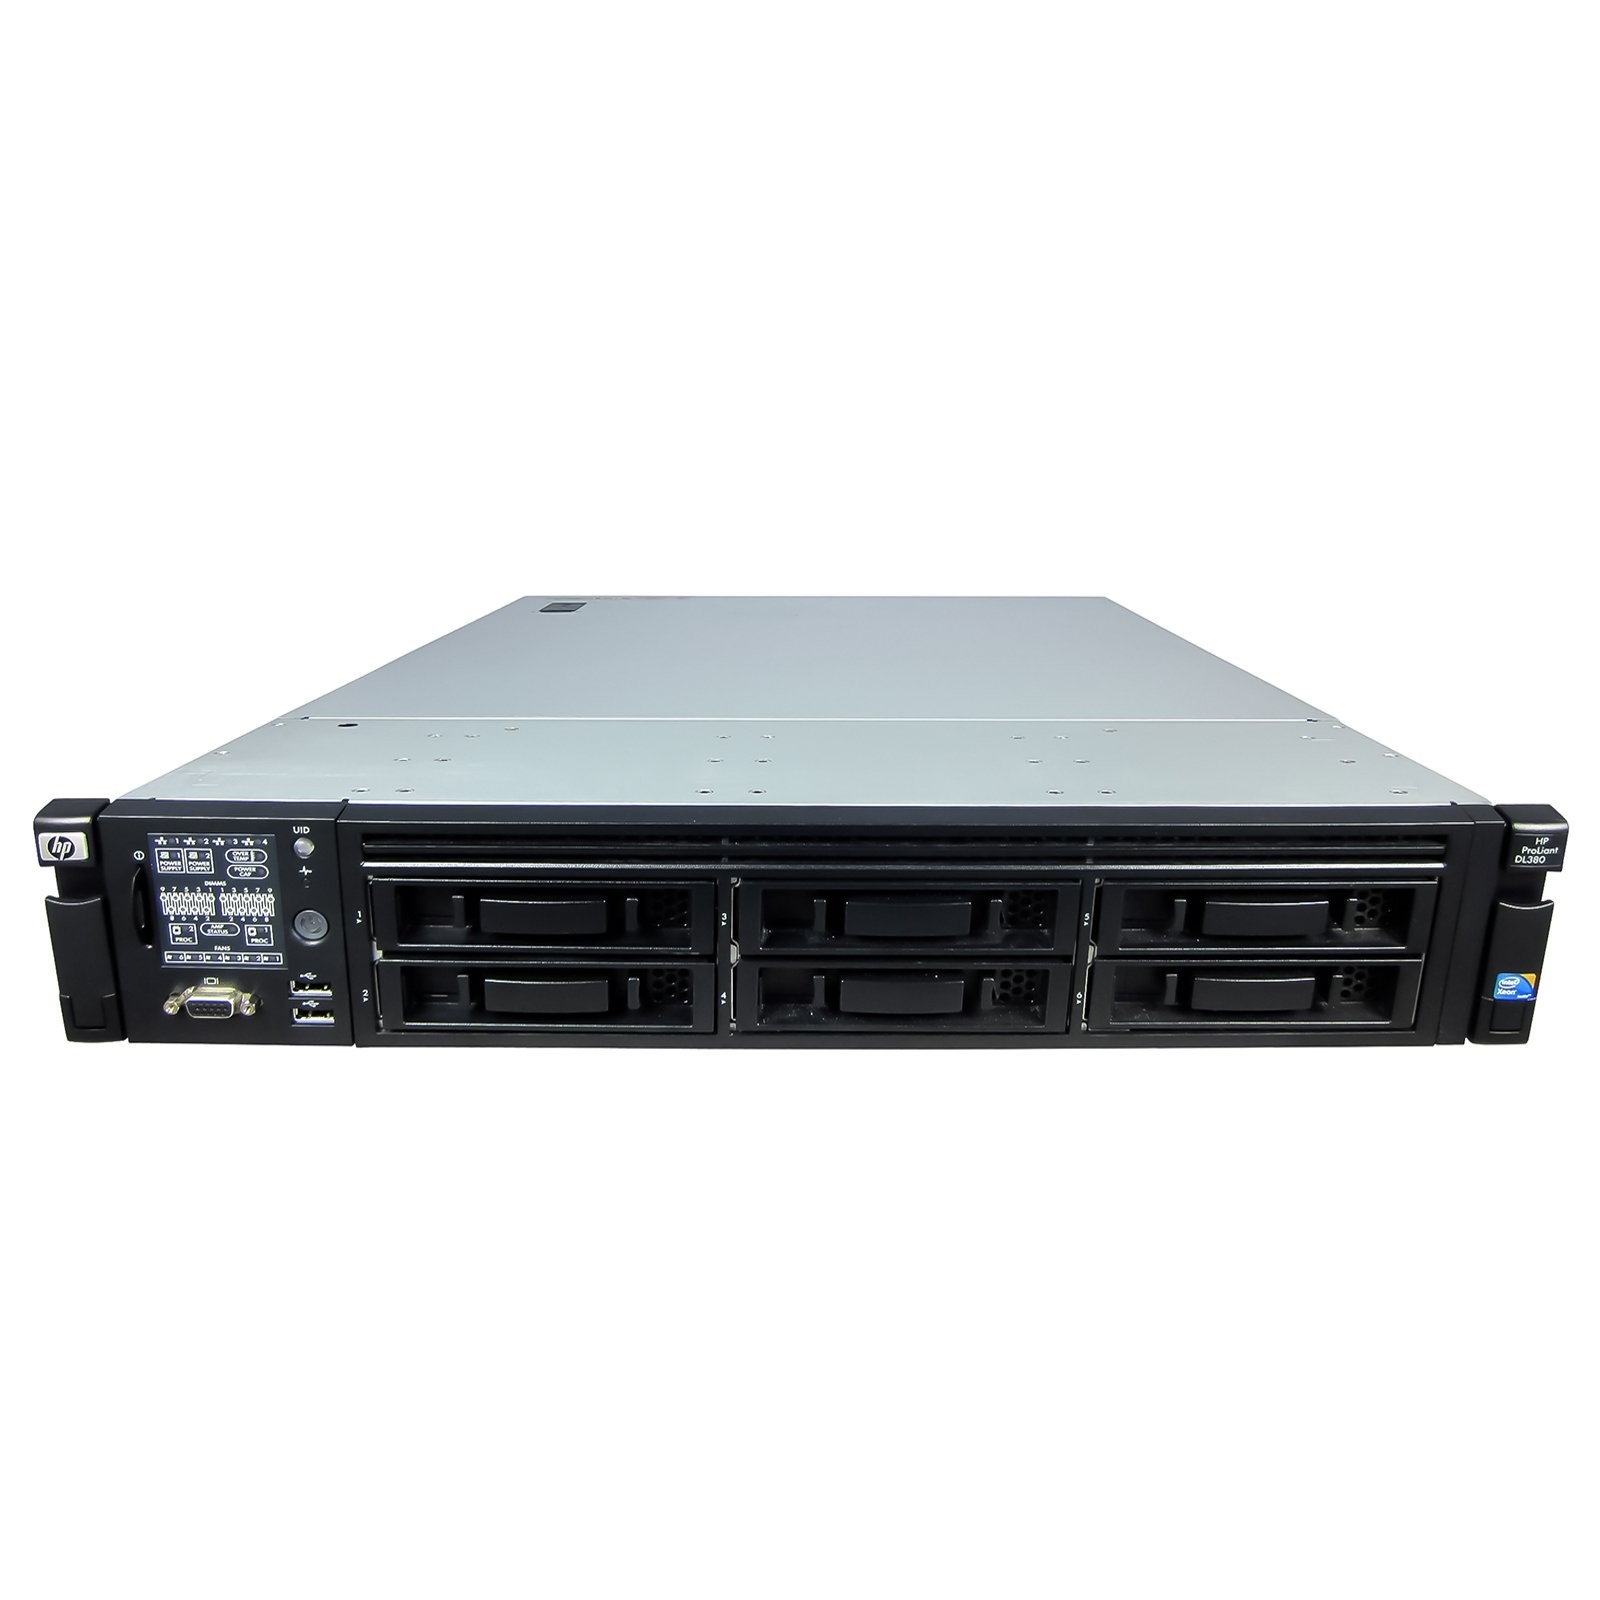 Подробное фото Сервер HP Proliant DL380 G7 Xeon 2x x5650 64Gb DDR3R 6x noHDD 3.5" SAS RAID p410i, 512Mb 2xPSU 460W